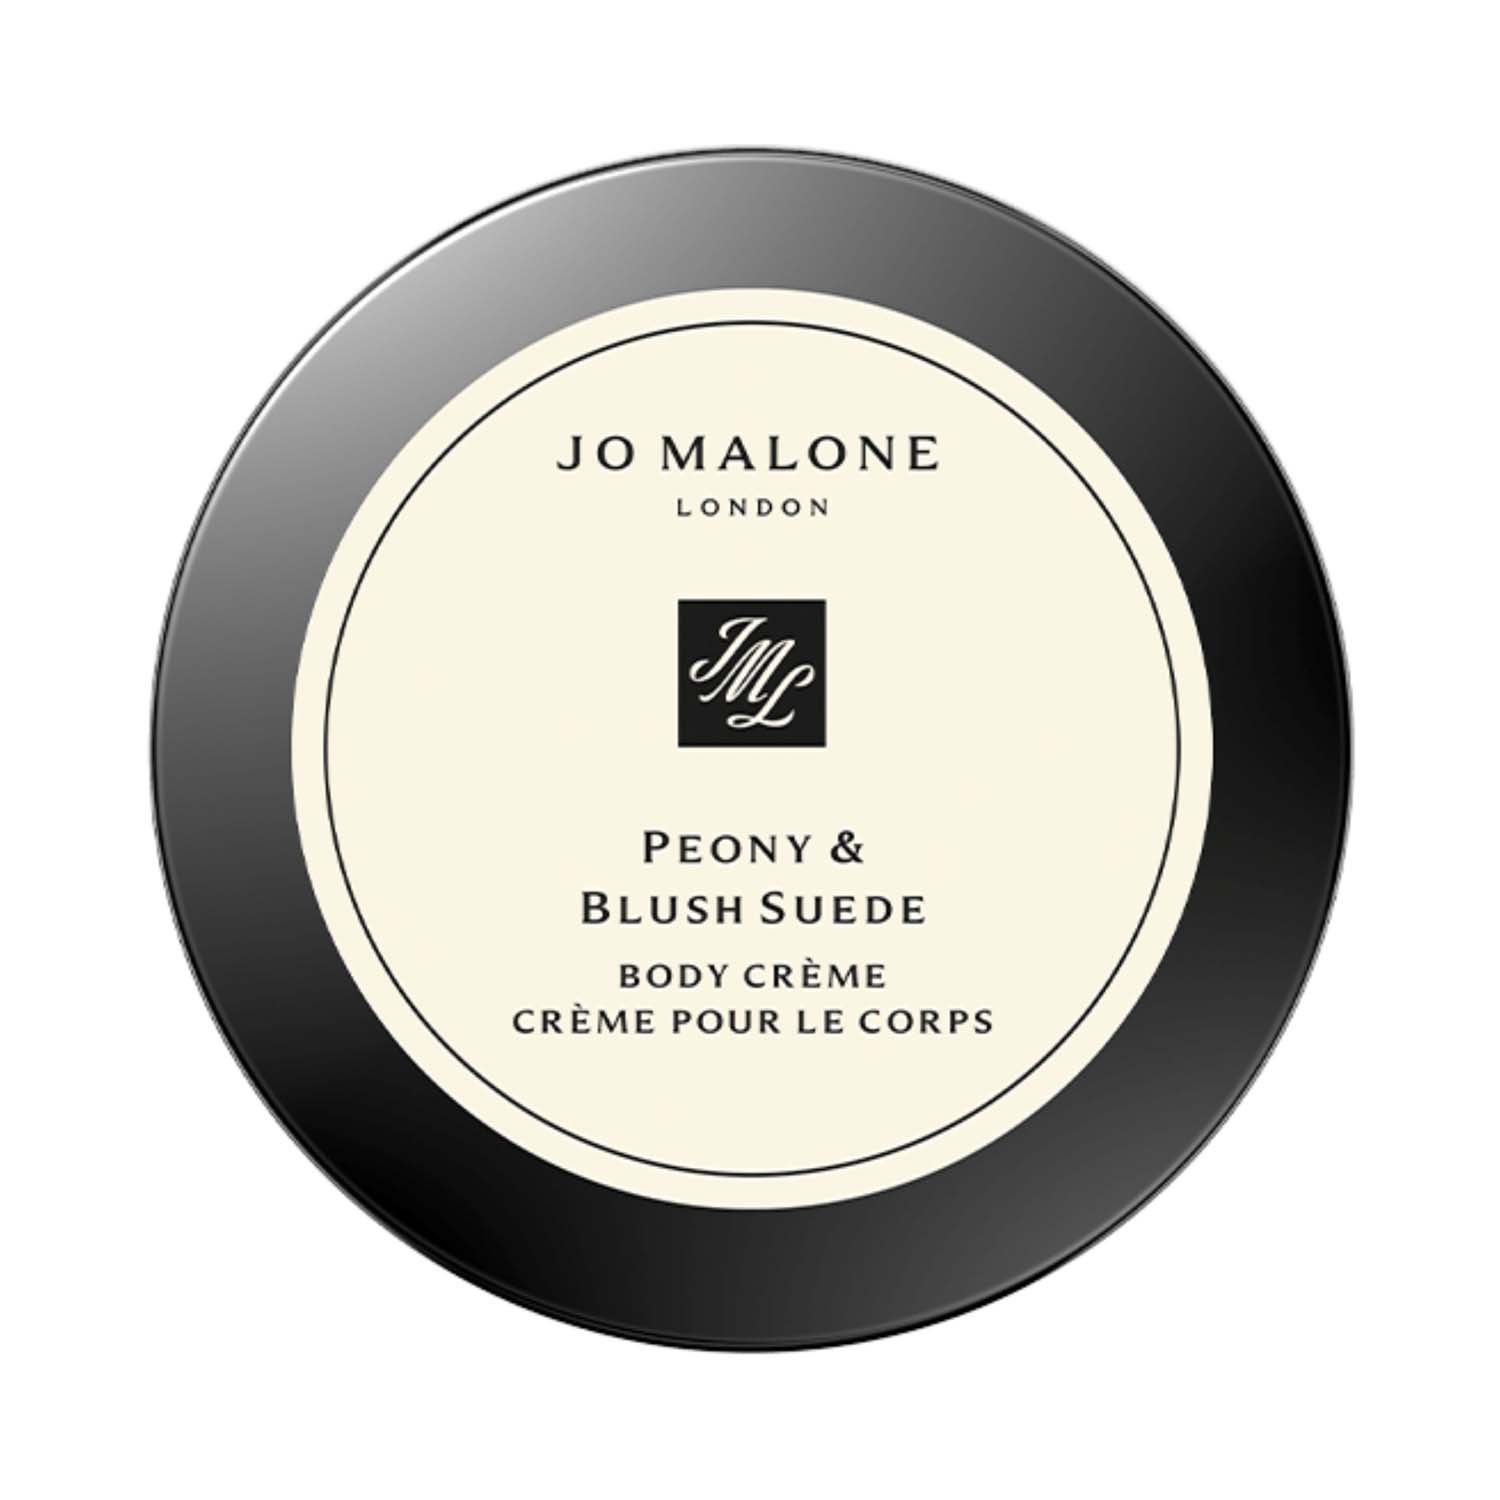 Jo Malone London | Jo Malone London Peony & Blush Suede Body Creme (50ml)